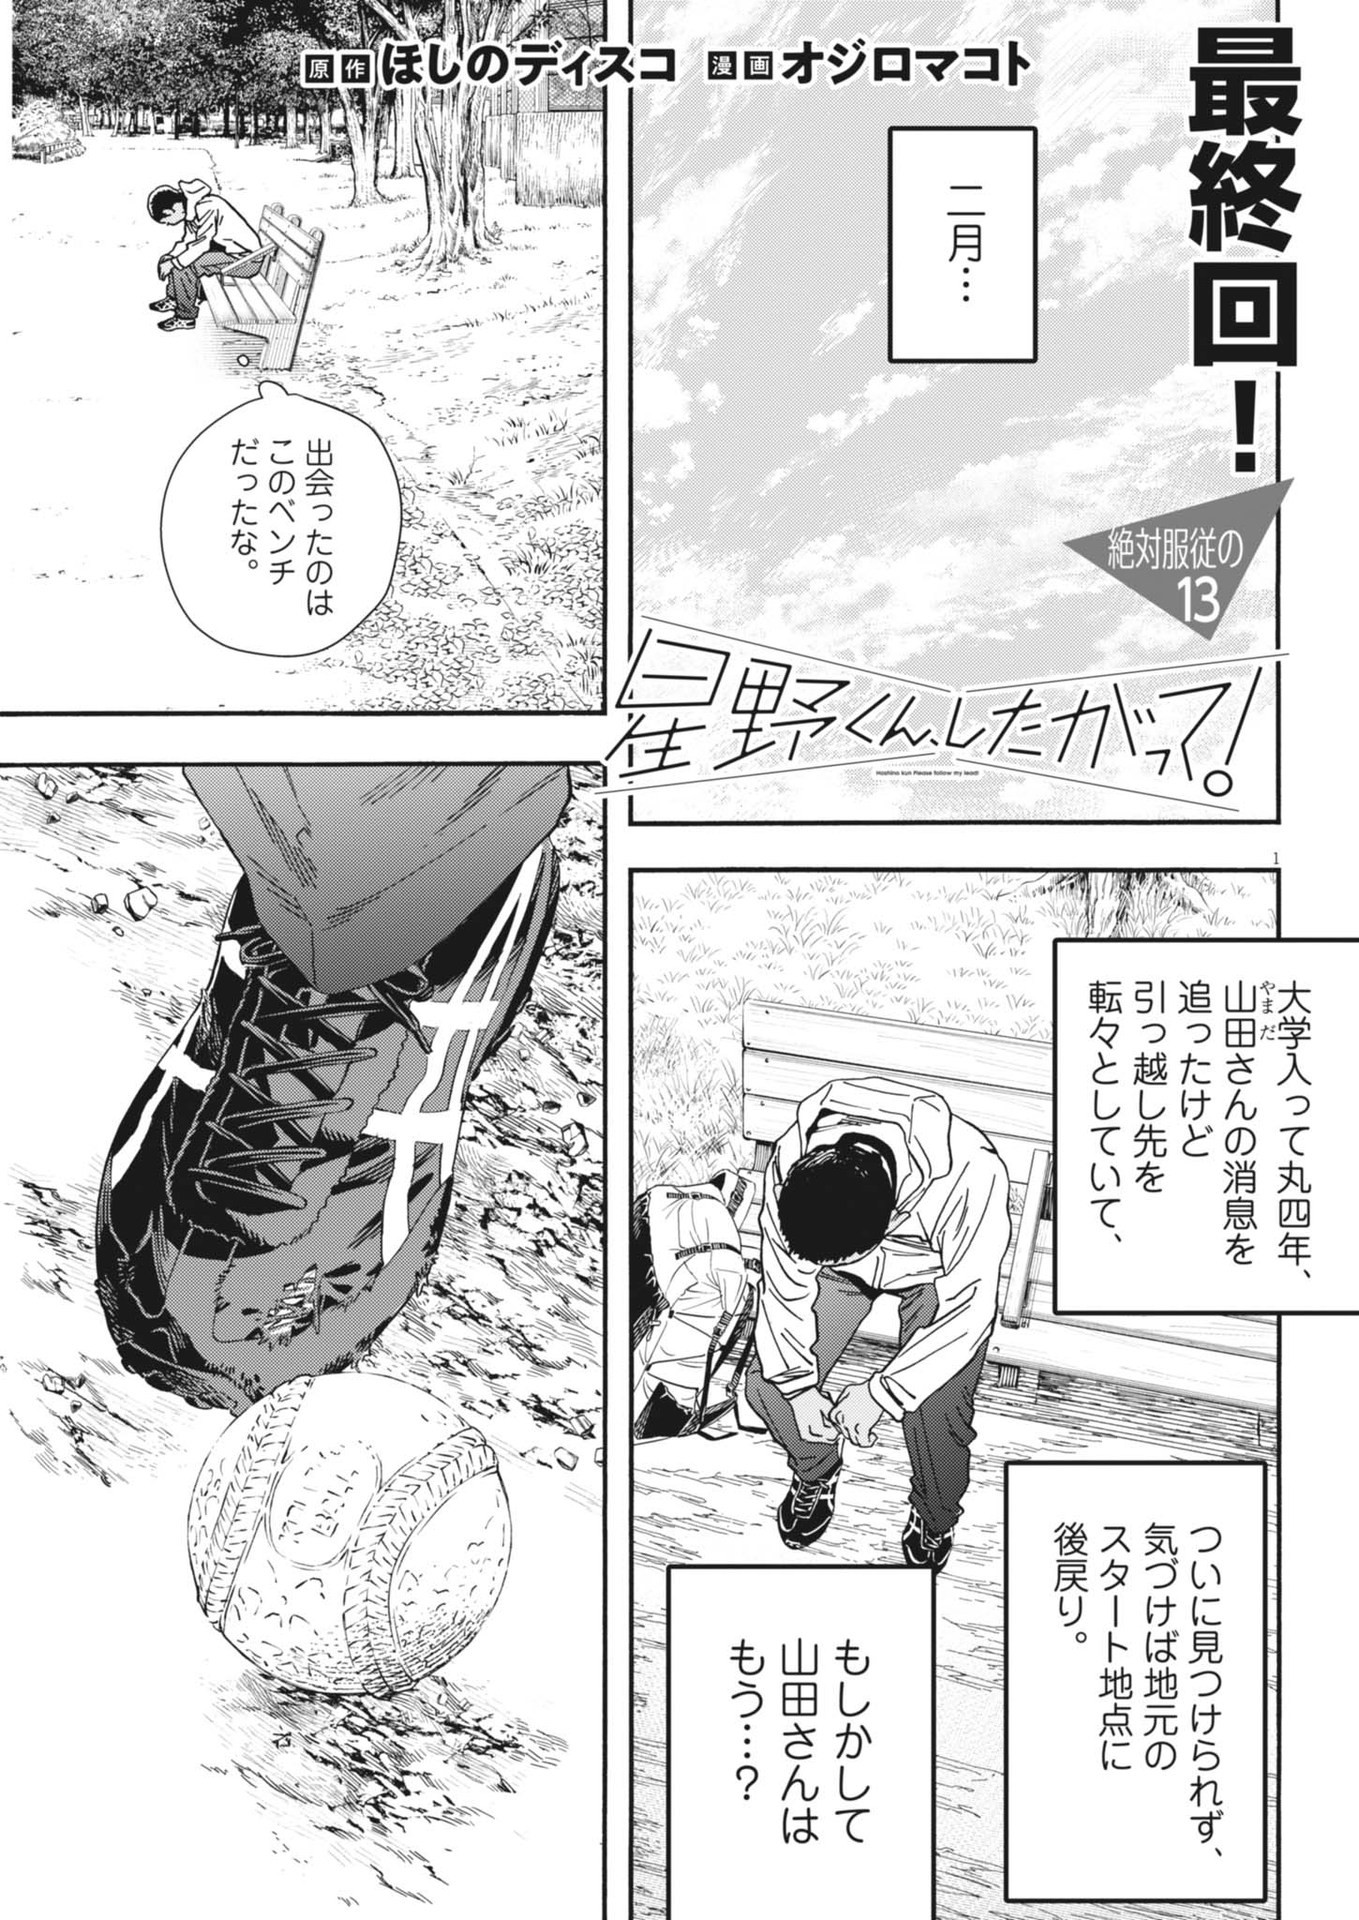 Hoshino-kun, Shitagatte! - Chapter 13 - Page 1